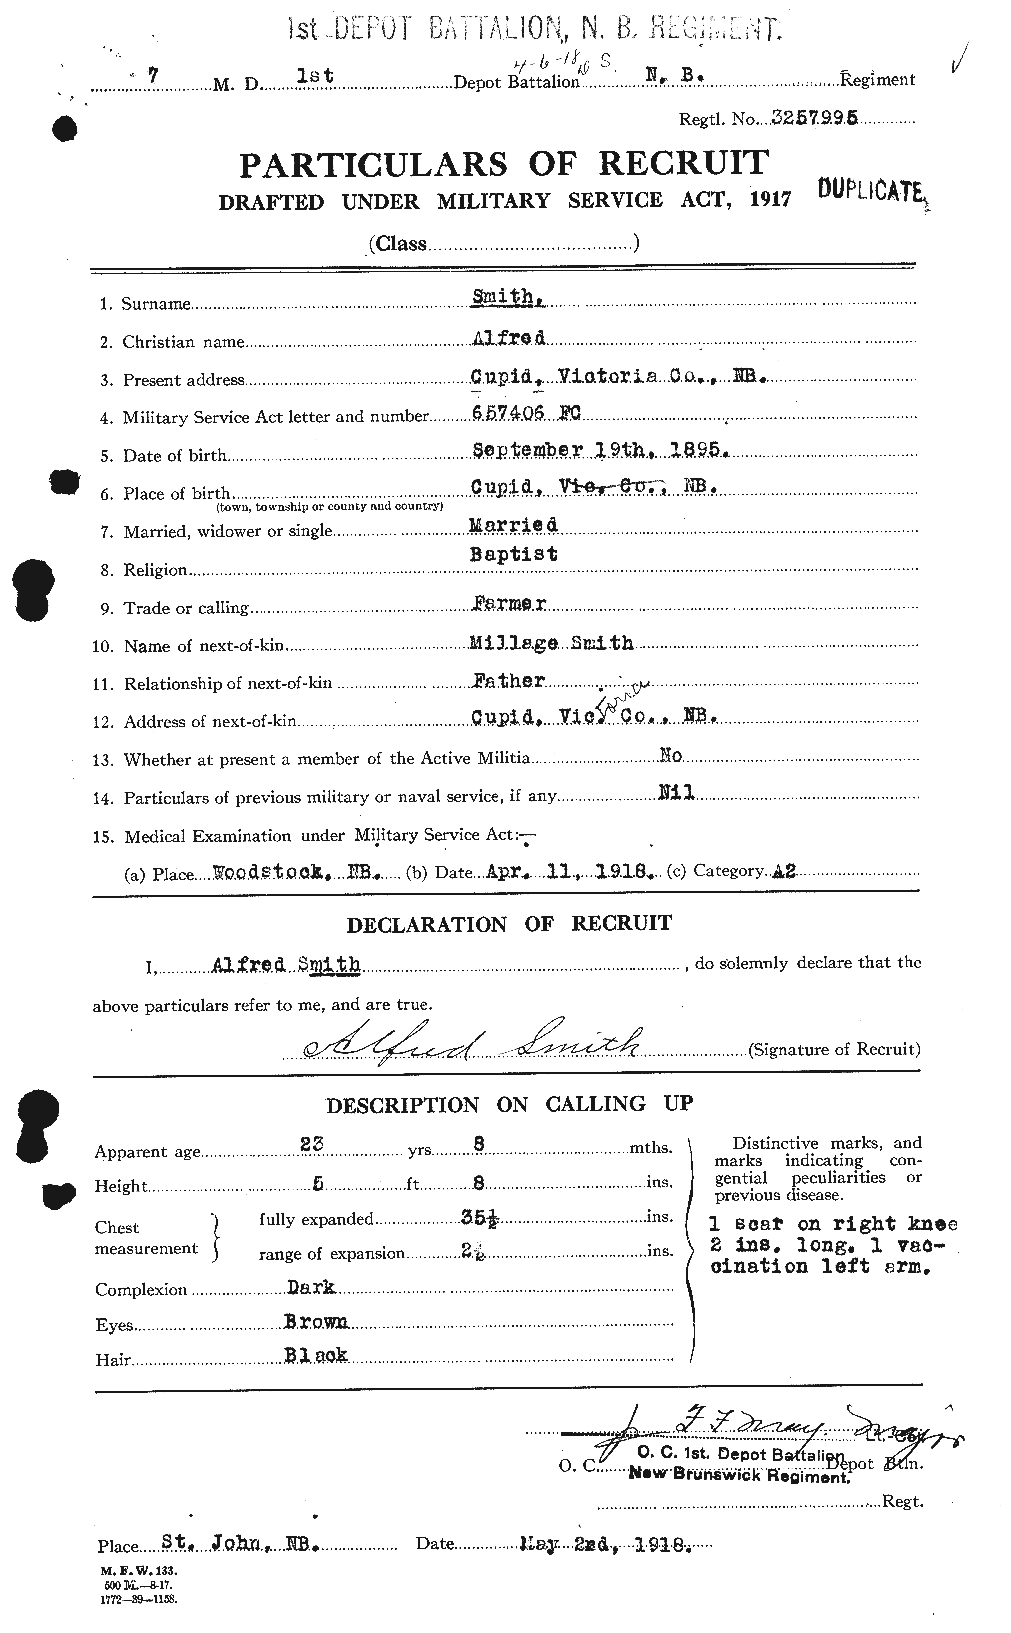 Dossiers du Personnel de la Première Guerre mondiale - CEC 098020a